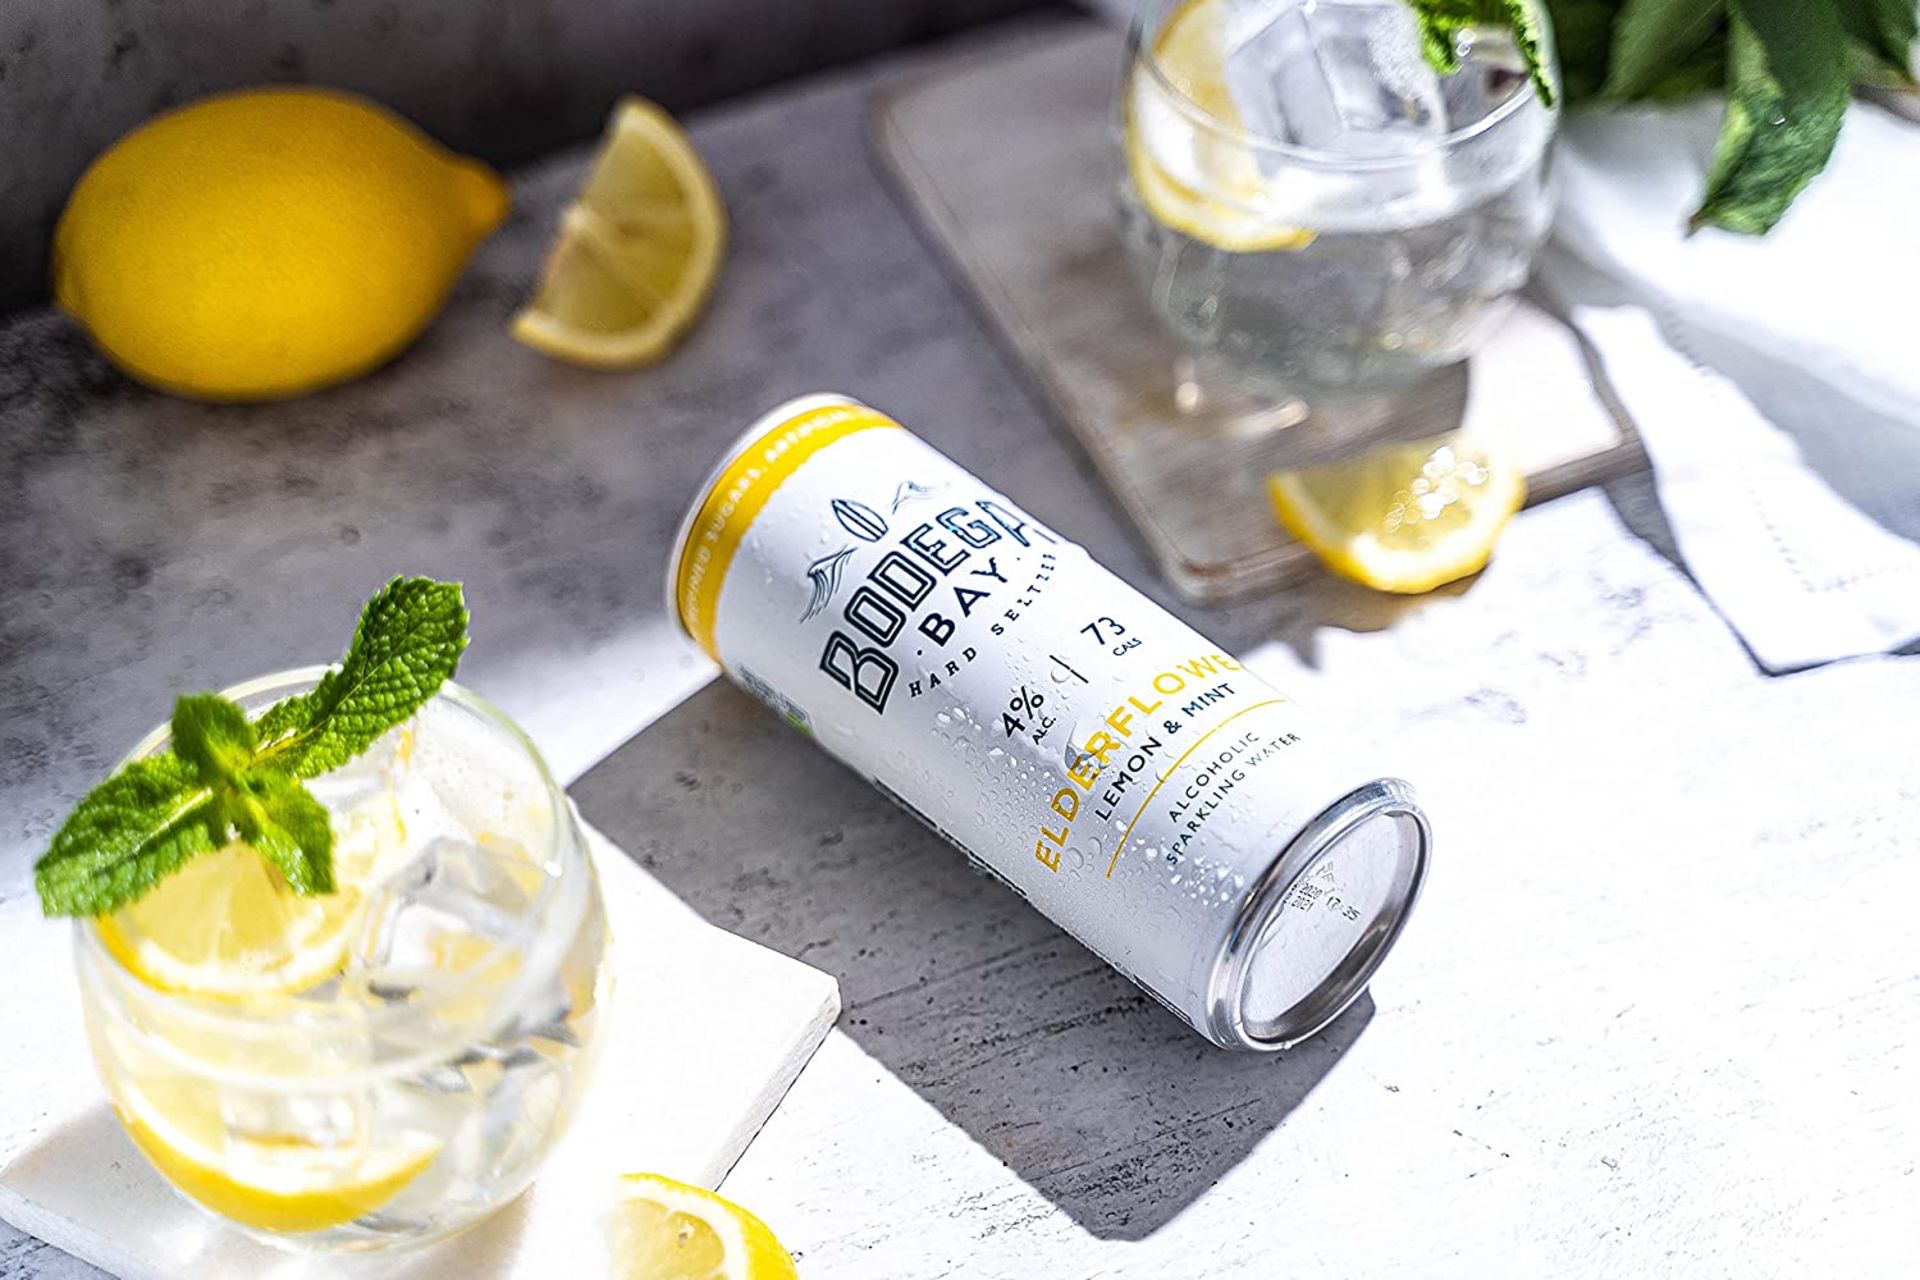 24 x Bodega Bay Hard Seltzer 250ml Alcoholic Sparkling Water Drinks - Elderflower Lemon & Mint - - Image 4 of 10